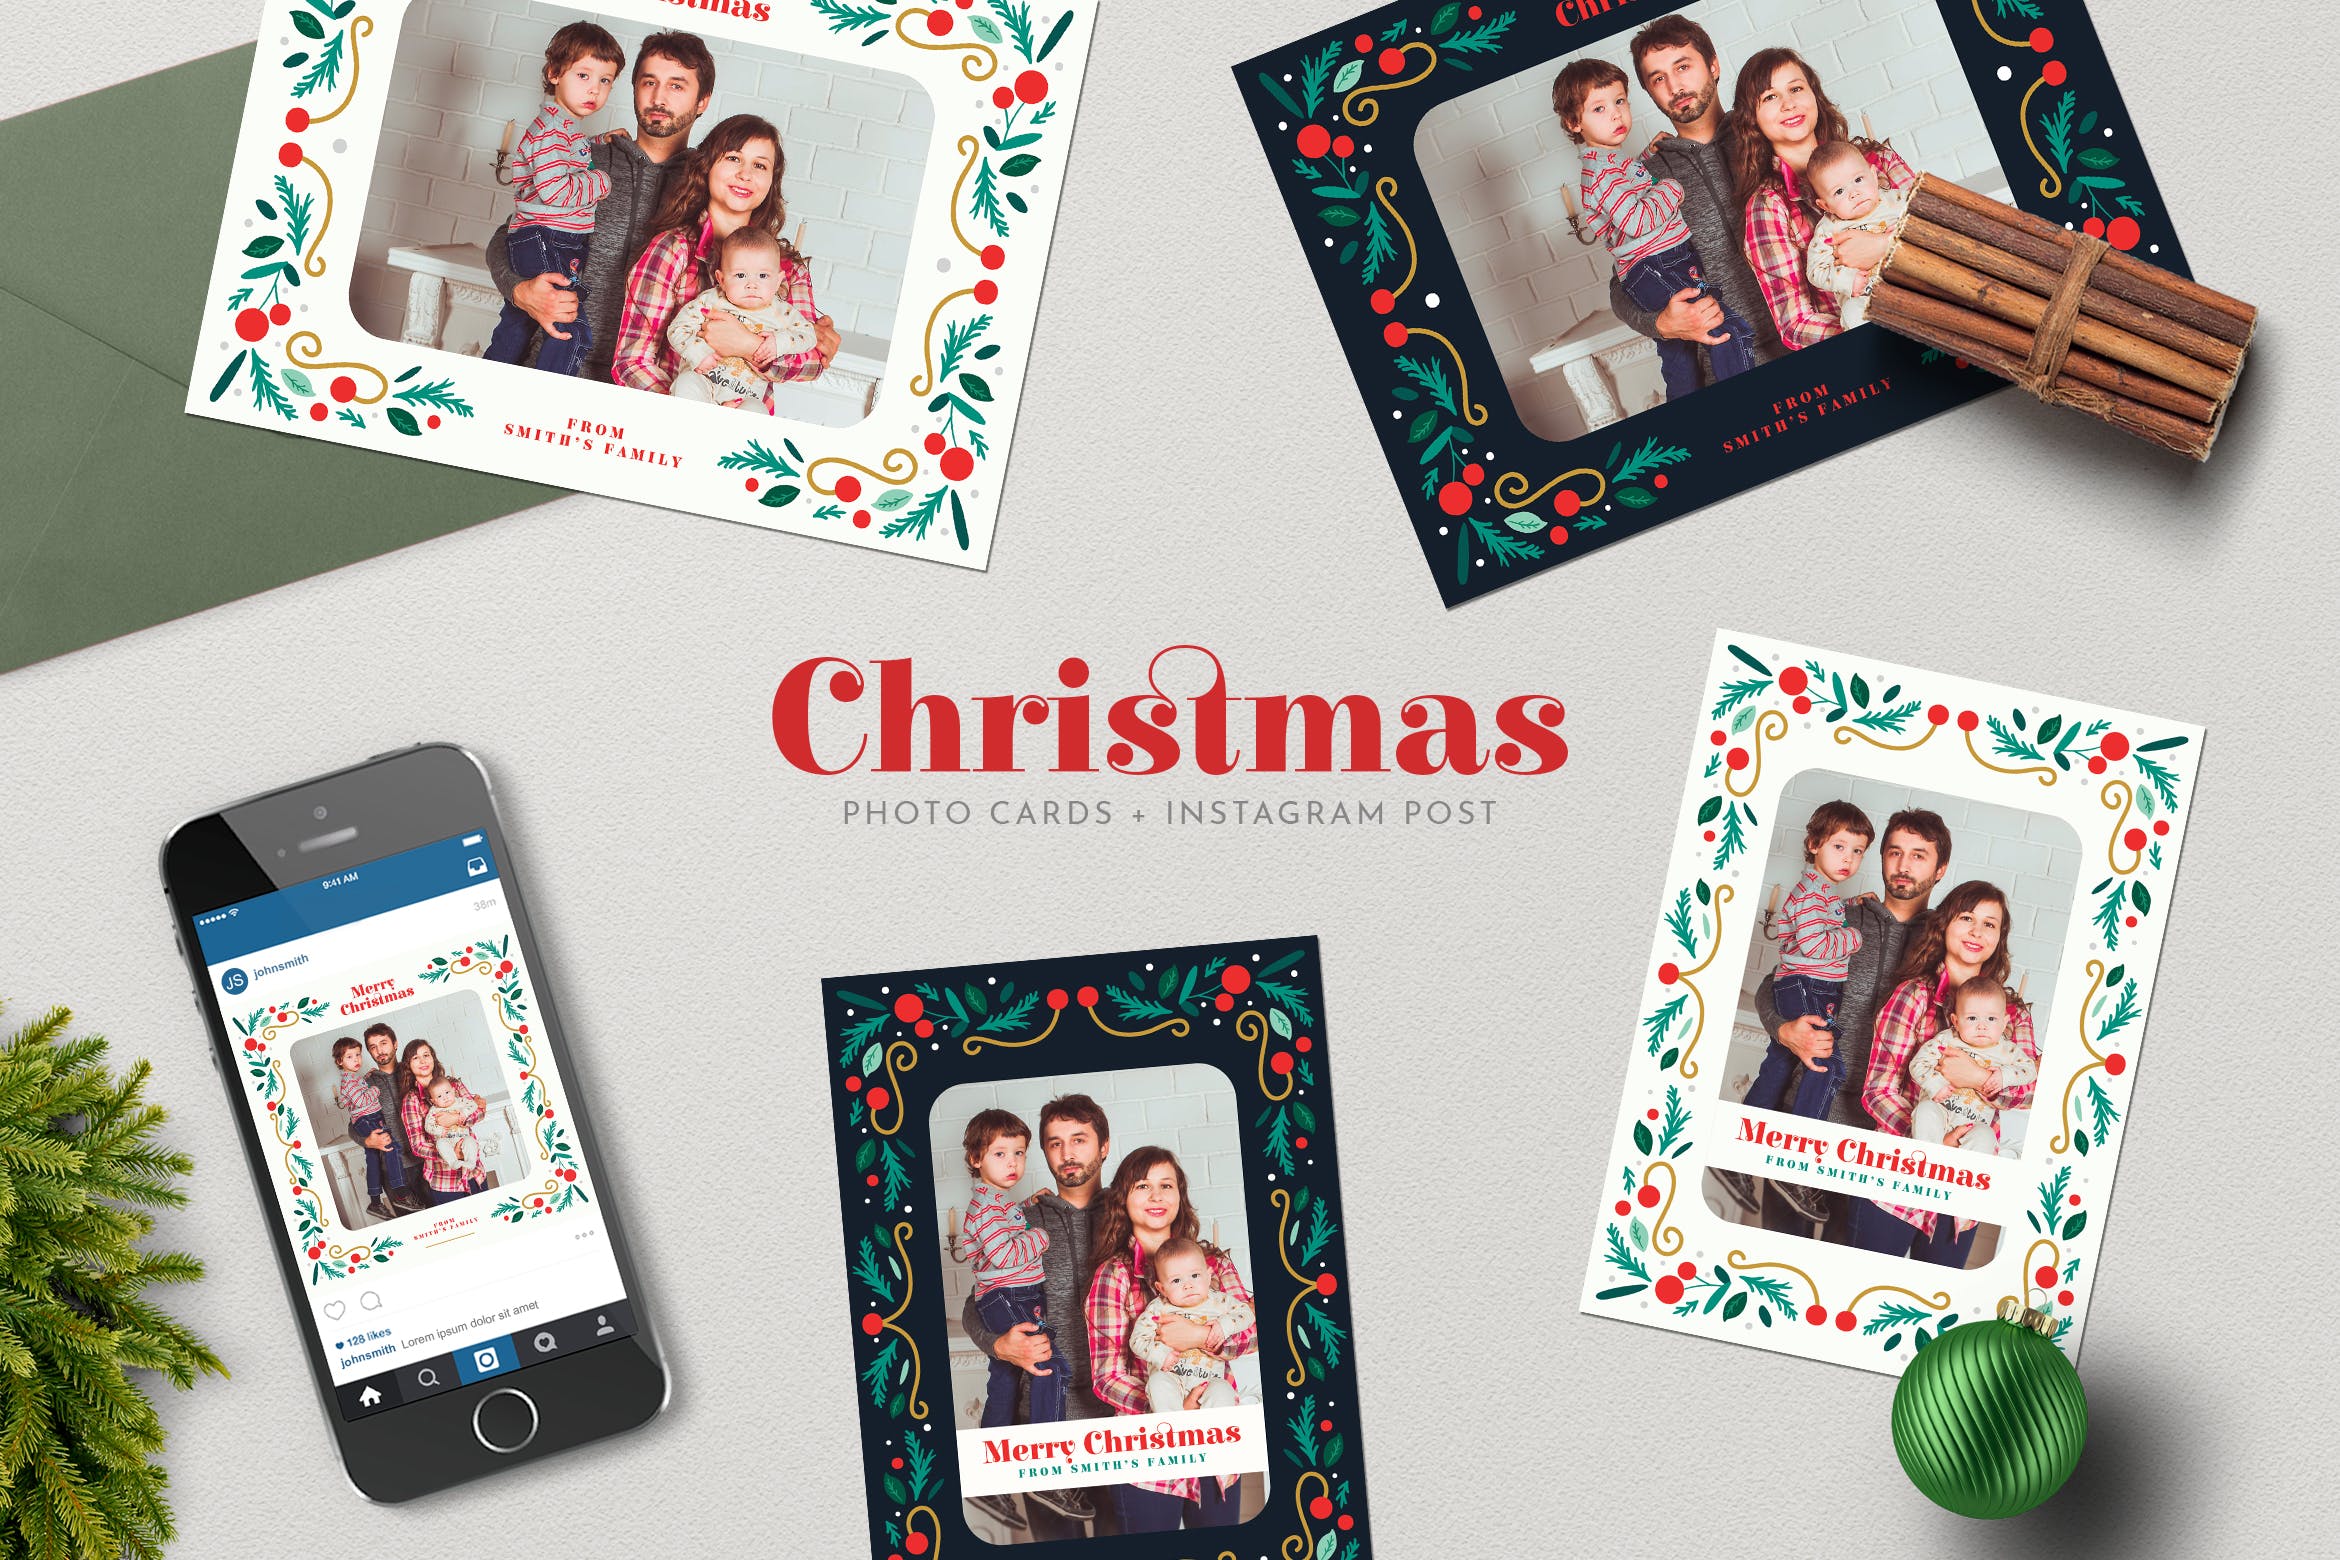 圣诞节照片明信片&Instagram贴图设计模板16图库精选 Christmas PhotoCards +Instagram Post插图